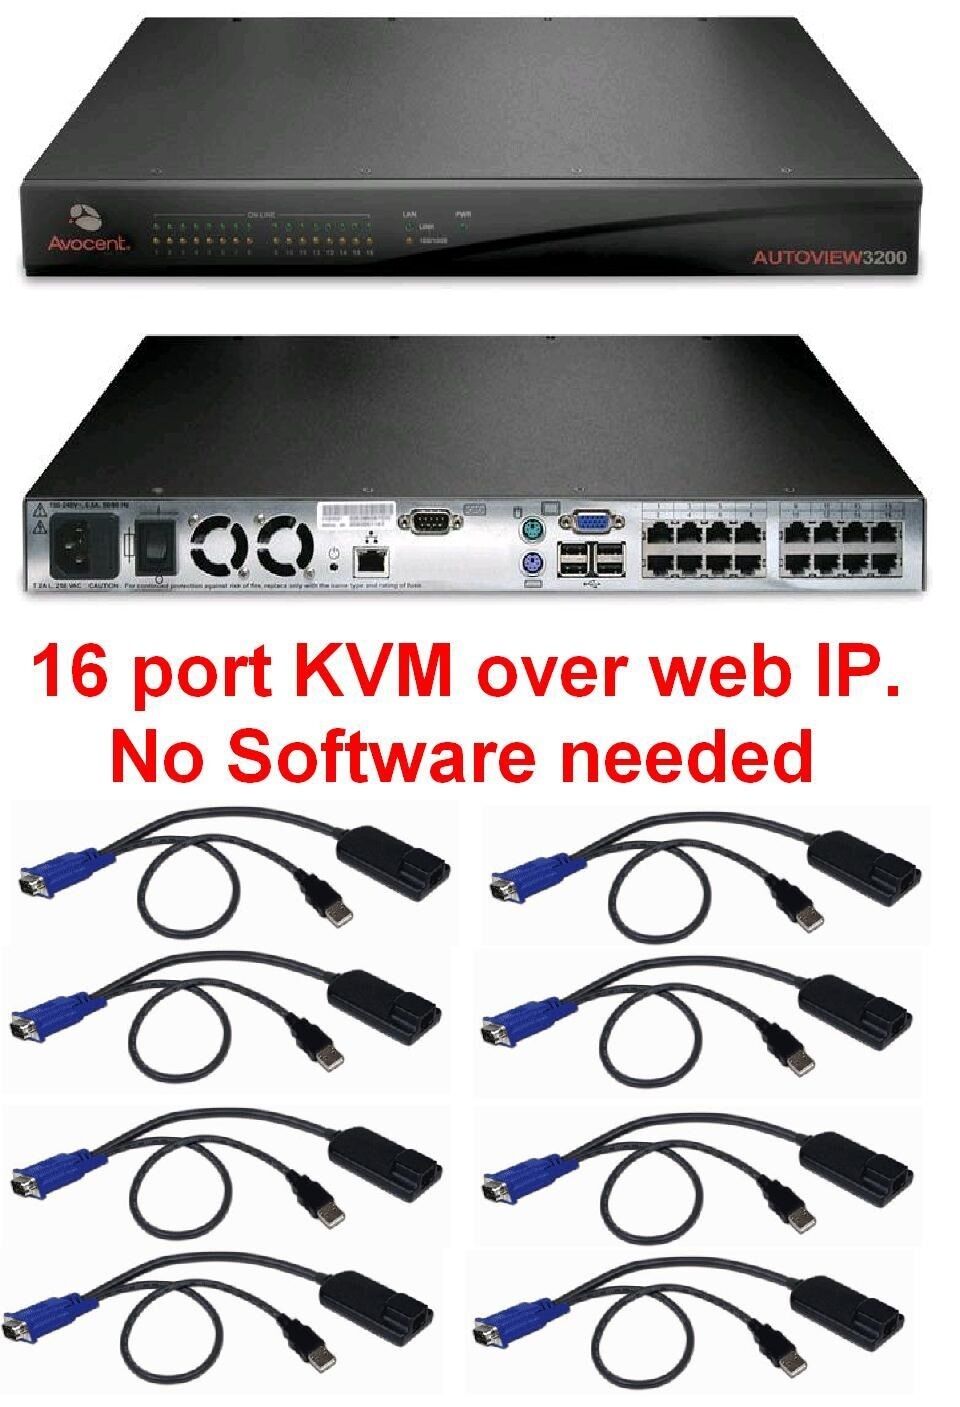 Avocent AUTOVIEW 3200 AV3200 16 port KVM Switch +8 AVRIQ-USB Modules